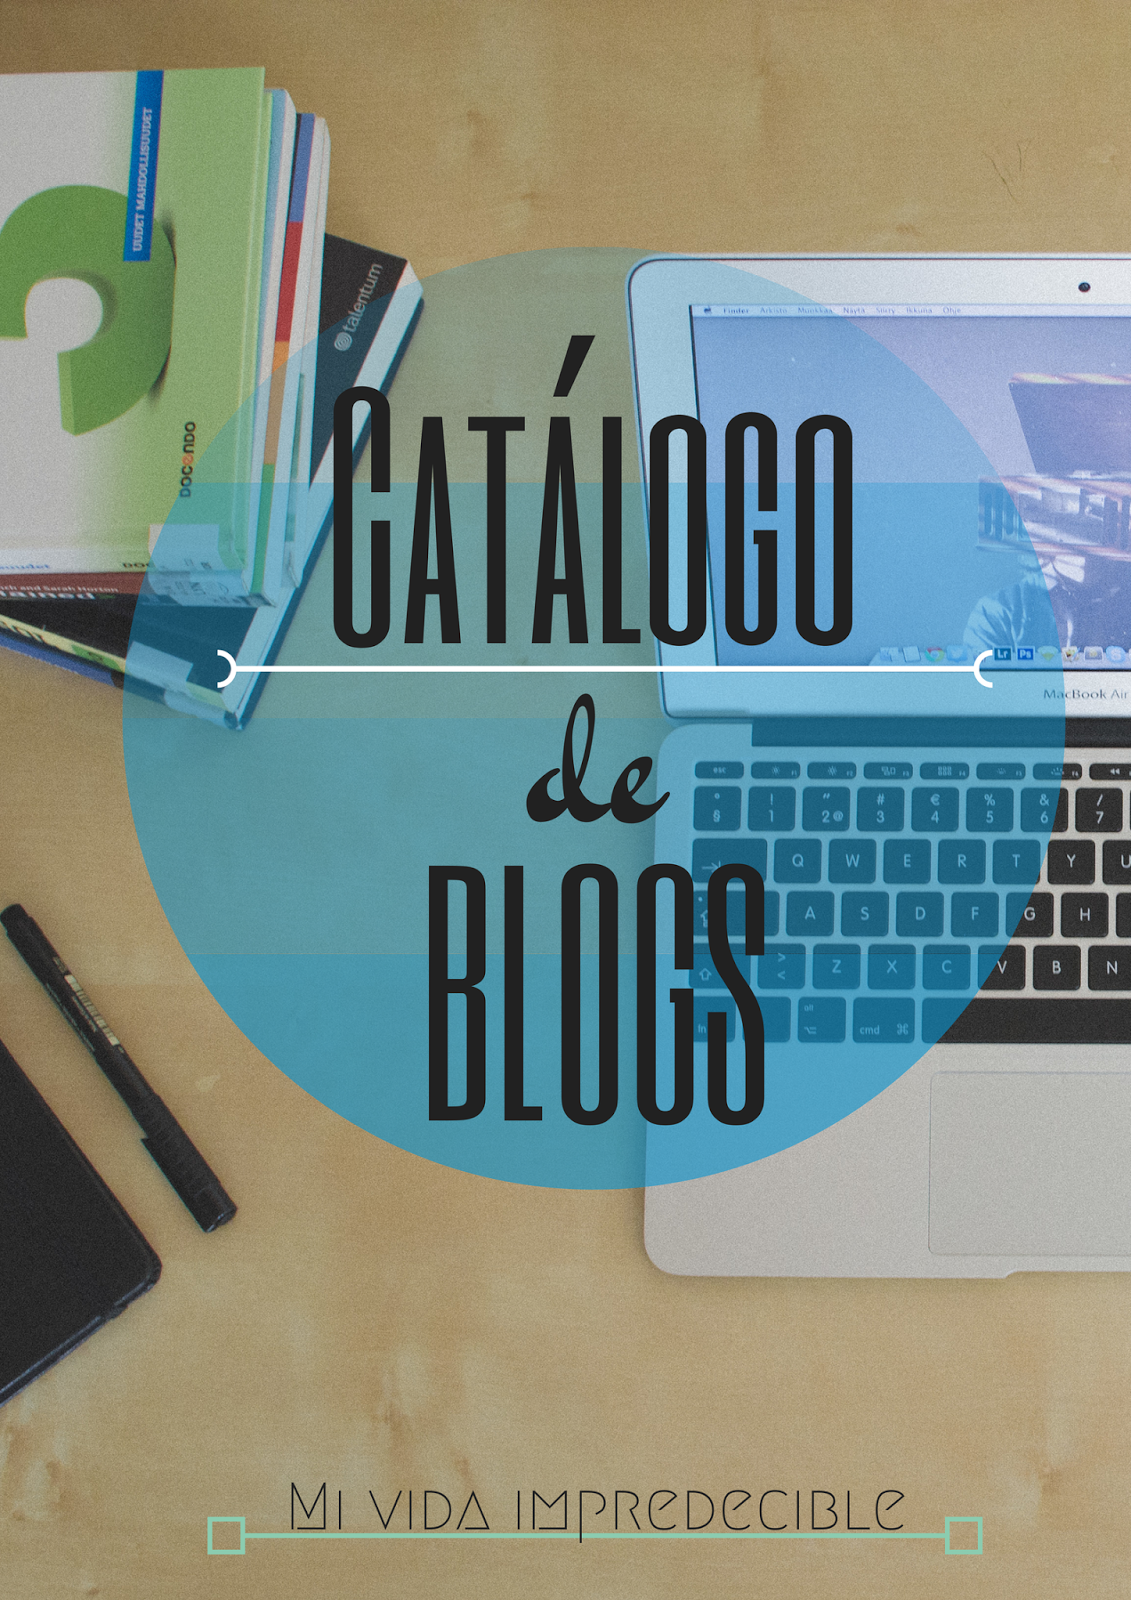 Catálogo de blogs.